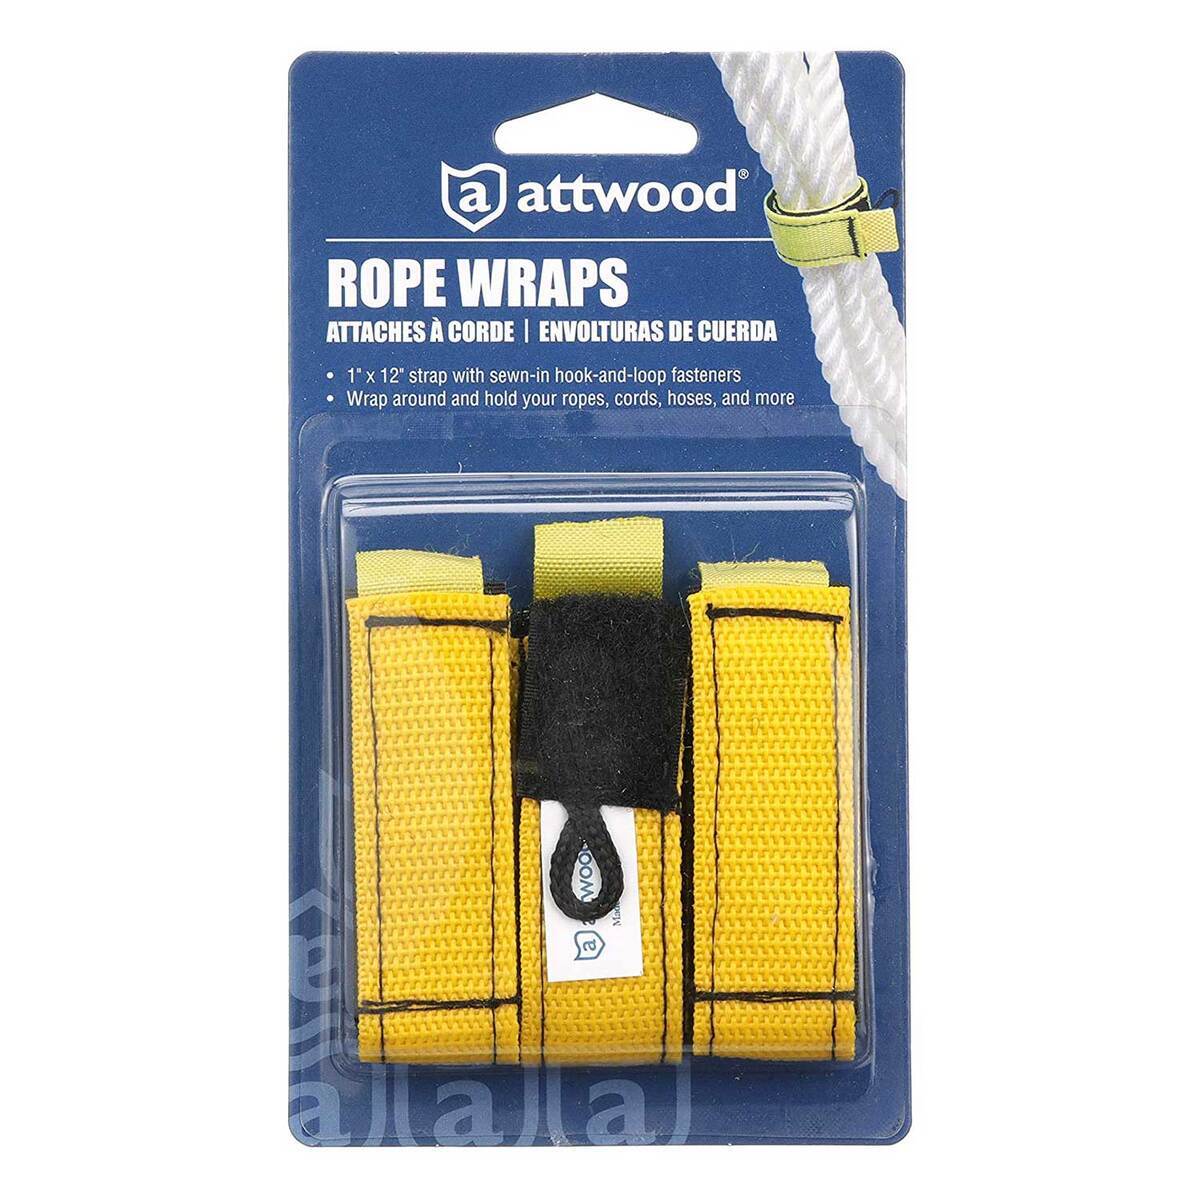 https://www.sportsmans.com/medias/attwood-rope-wraps-boat-accessory-3-pack-1in-by-12-in-with-hand-loop-fasteners-1548493-1.jpg?context=bWFzdGVyfGltYWdlc3wxNTA0MzB8aW1hZ2UvanBlZ3xhR0ppTDJnek9DOHhNRE0yTWpZMU56UTNNalUwTWk4eE5UUTRORGt6TFRGZlltRnpaUzFqYjI1MlpYSnphVzl1Um05eWJXRjBYekV5TURBdFkyOXVkbVZ5YzJsdmJrWnZjbTFoZEF8ZDNlNmVkMzBiNjkwNTYxZjQ4MGNiOThjMGZlNDFhYWYzMWYyYzRmYjMyMTk0NzMwNzI5YWE4YmVkMWRkYWRlNA